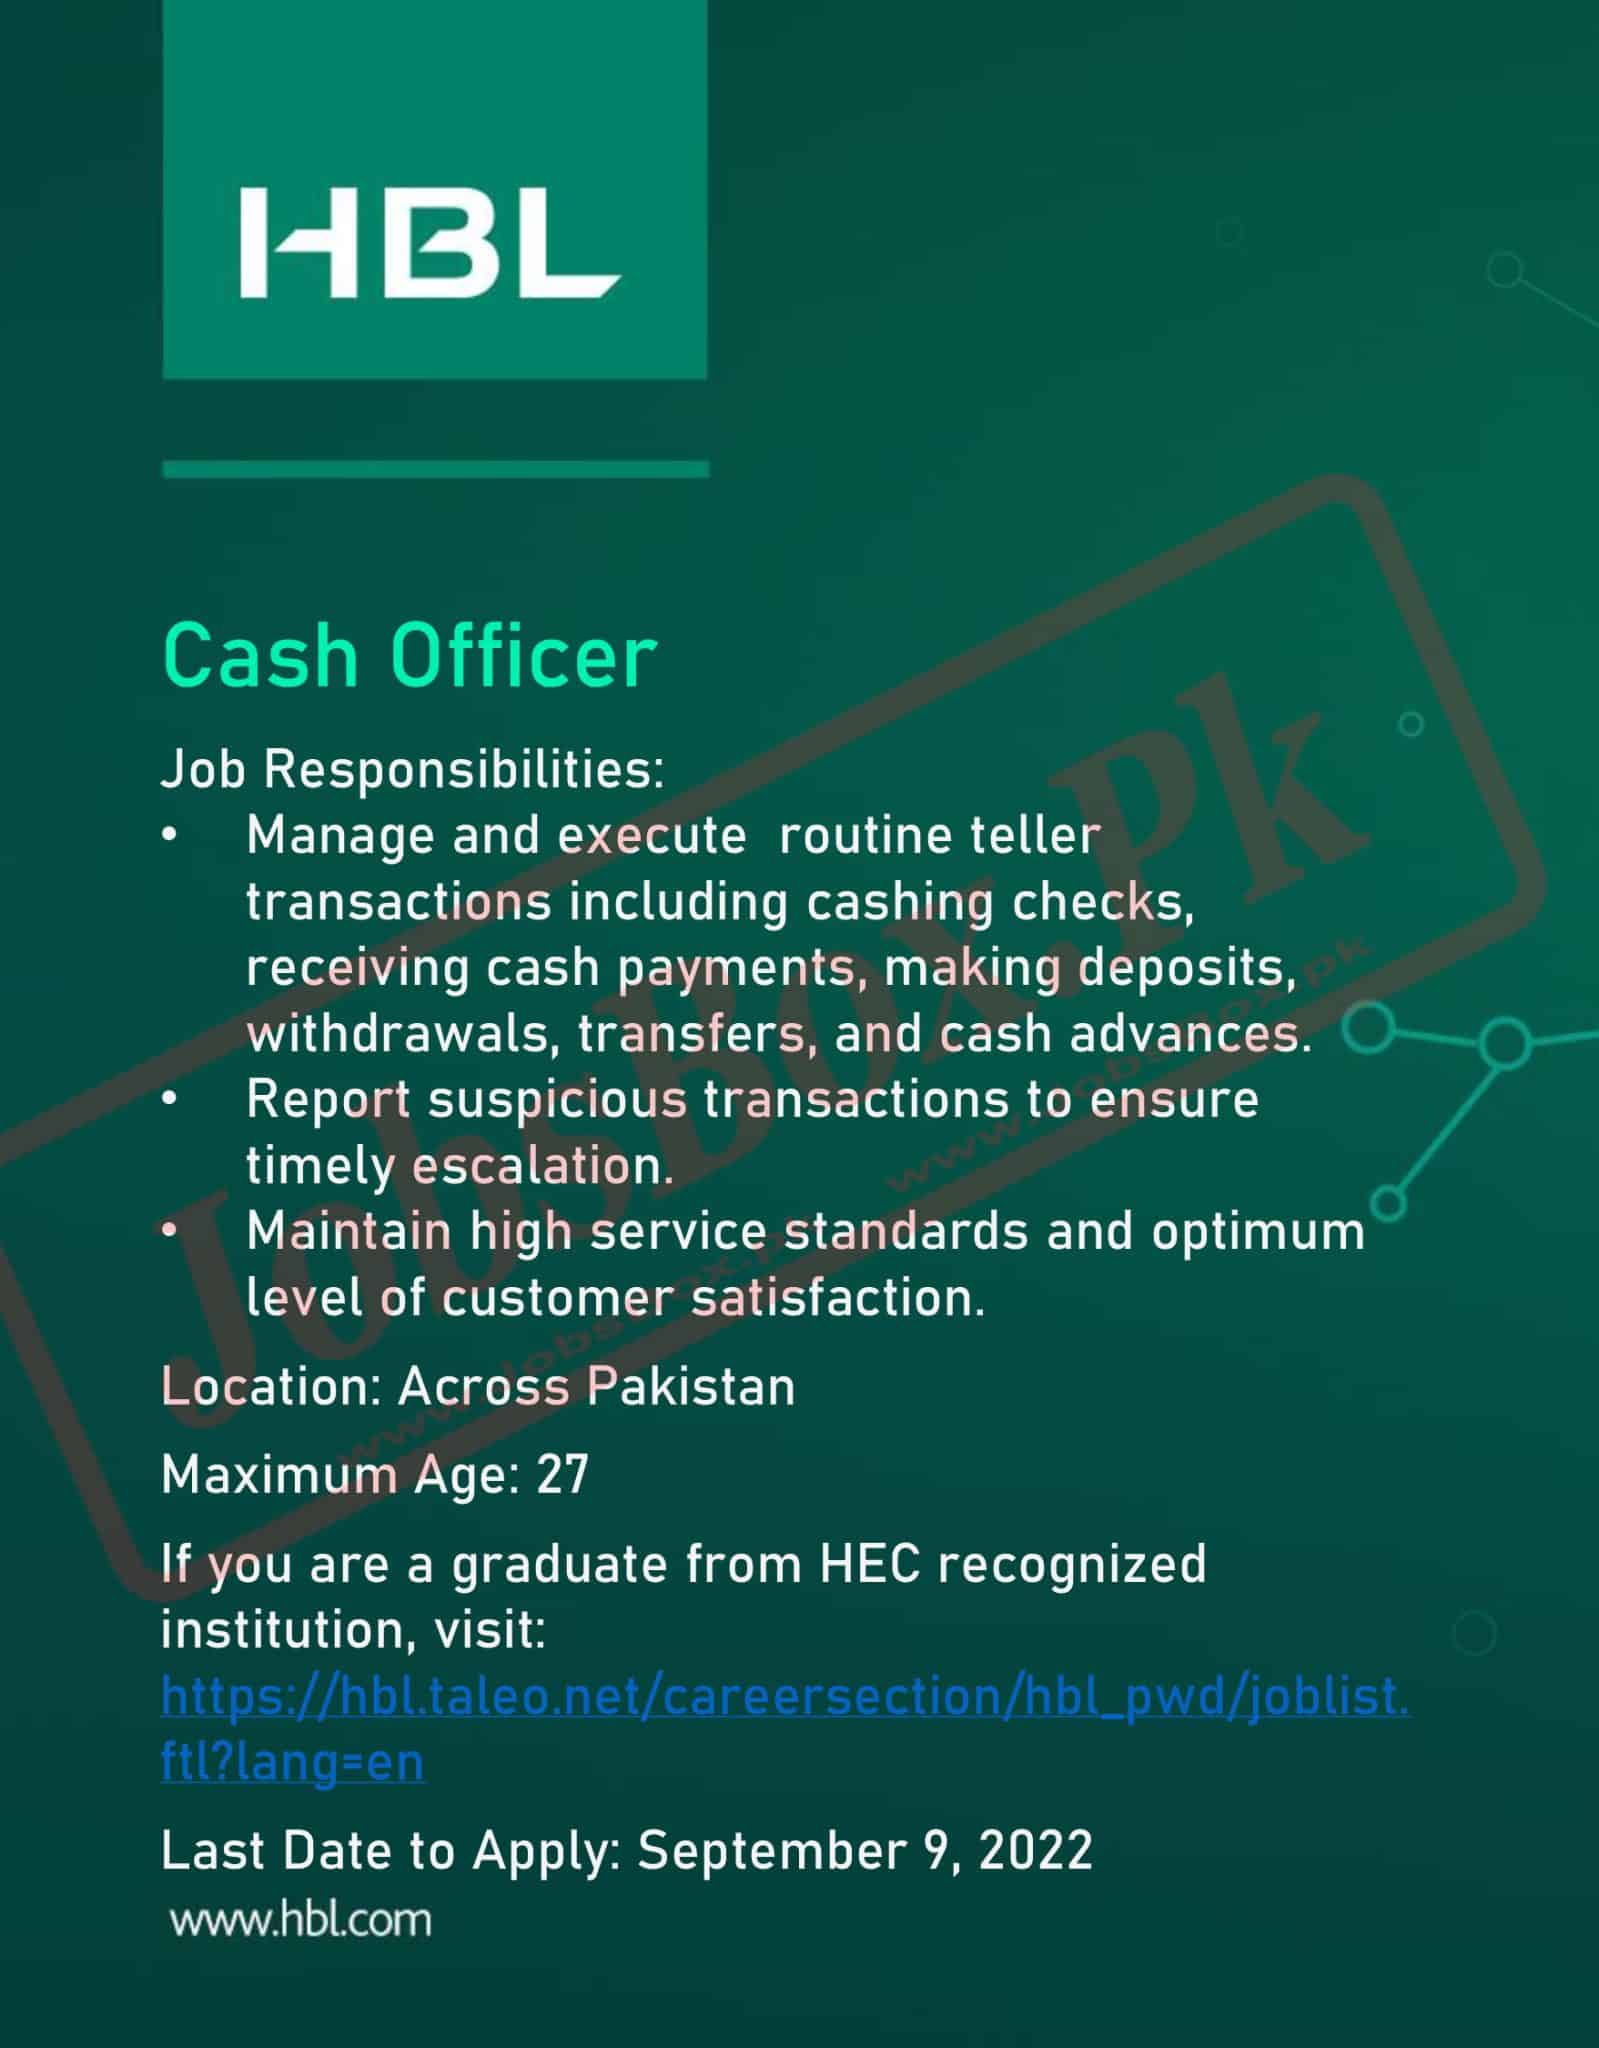 New Cashier Jobs 2022 Vacancies at HBL for Fresh Graduates